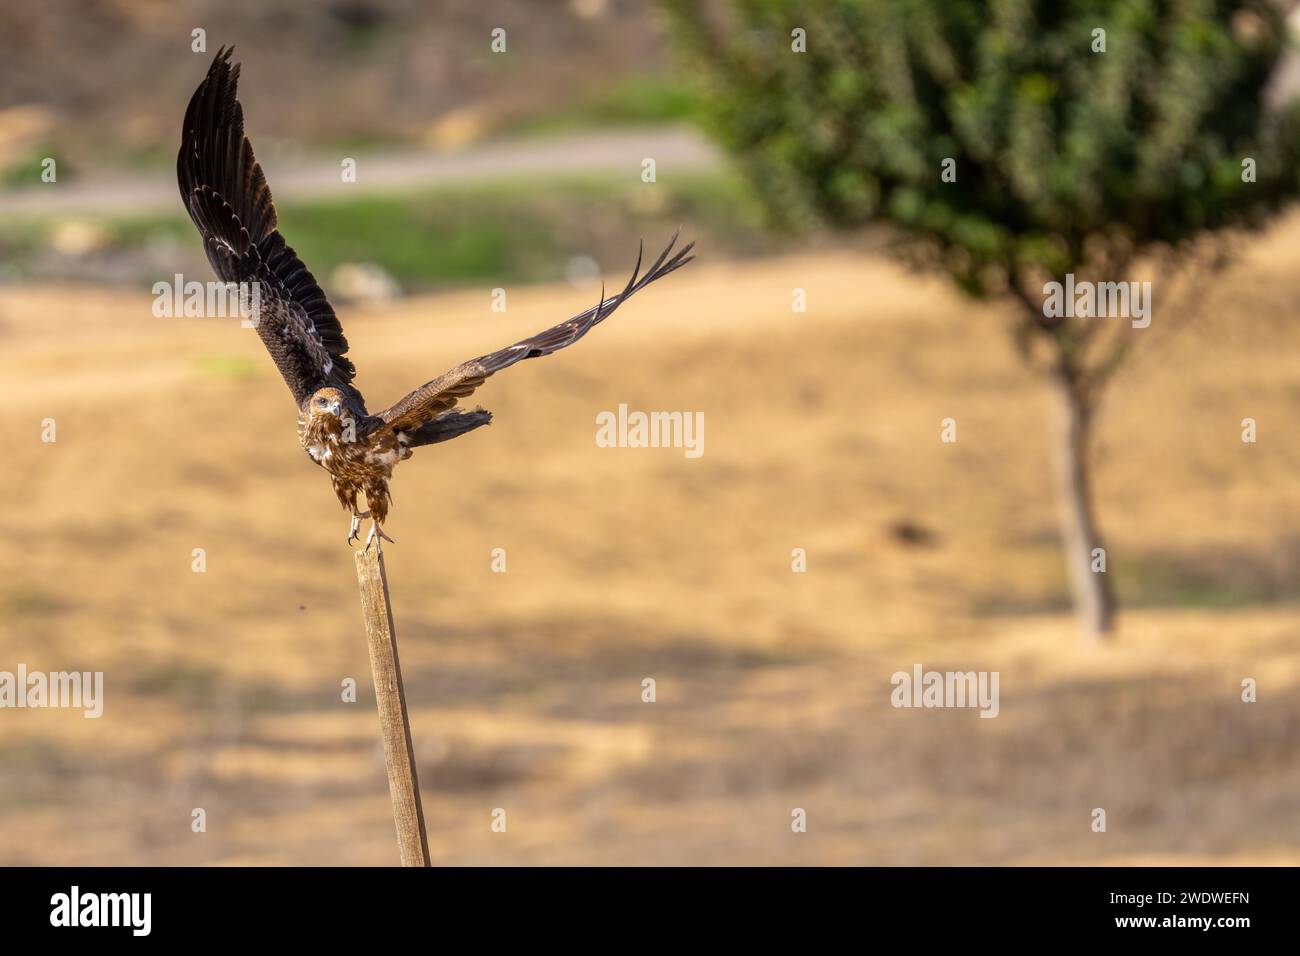 Der schwarze Drache (Milvus migrans) ist ein mittelgroßer Raubvogel in der Familie Stockfoto